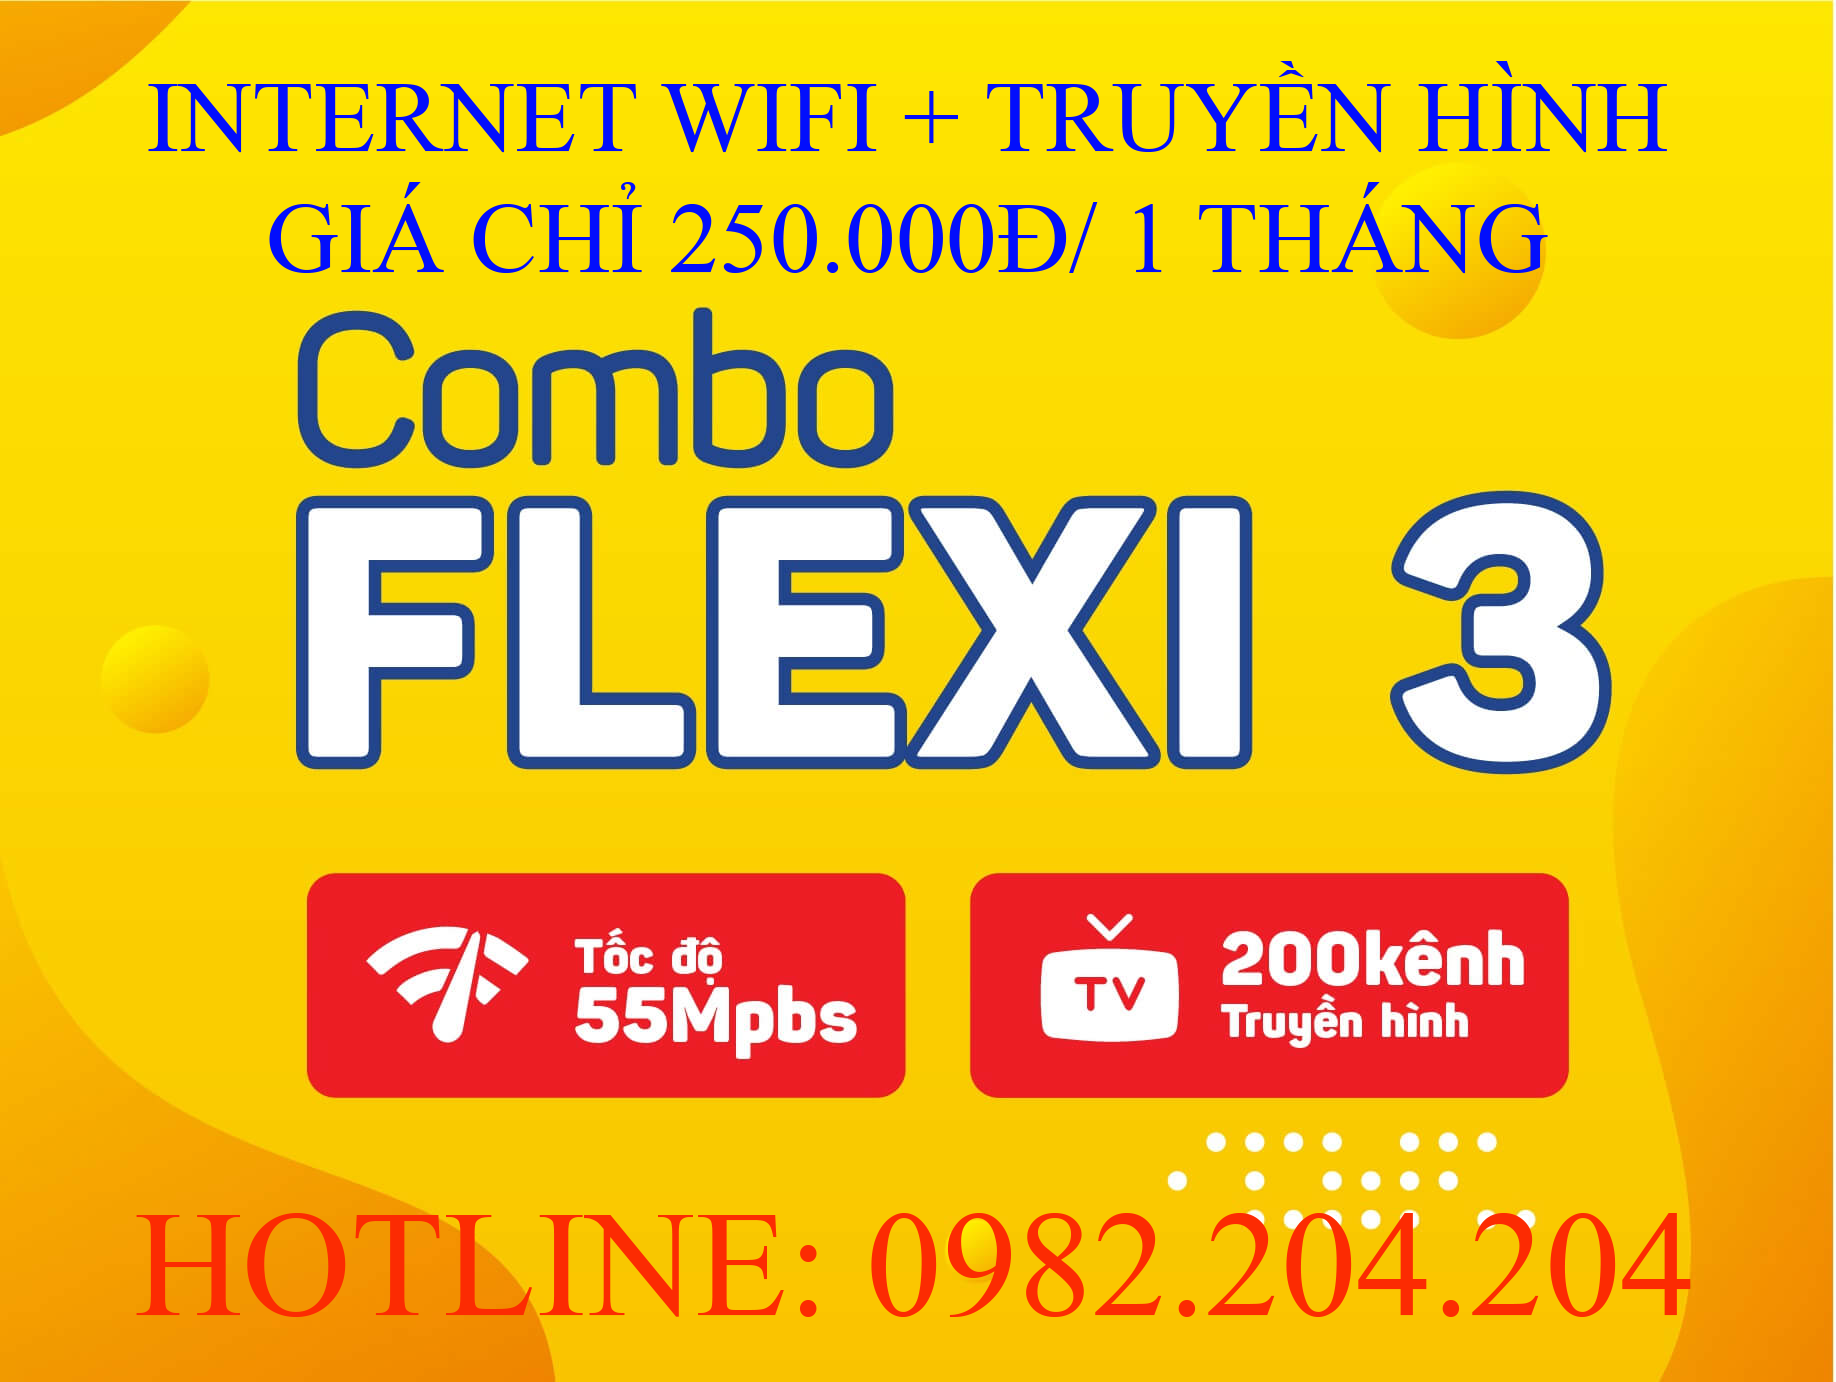 Lắp wifi Viettel combo flexi 3 kèm truyền hình